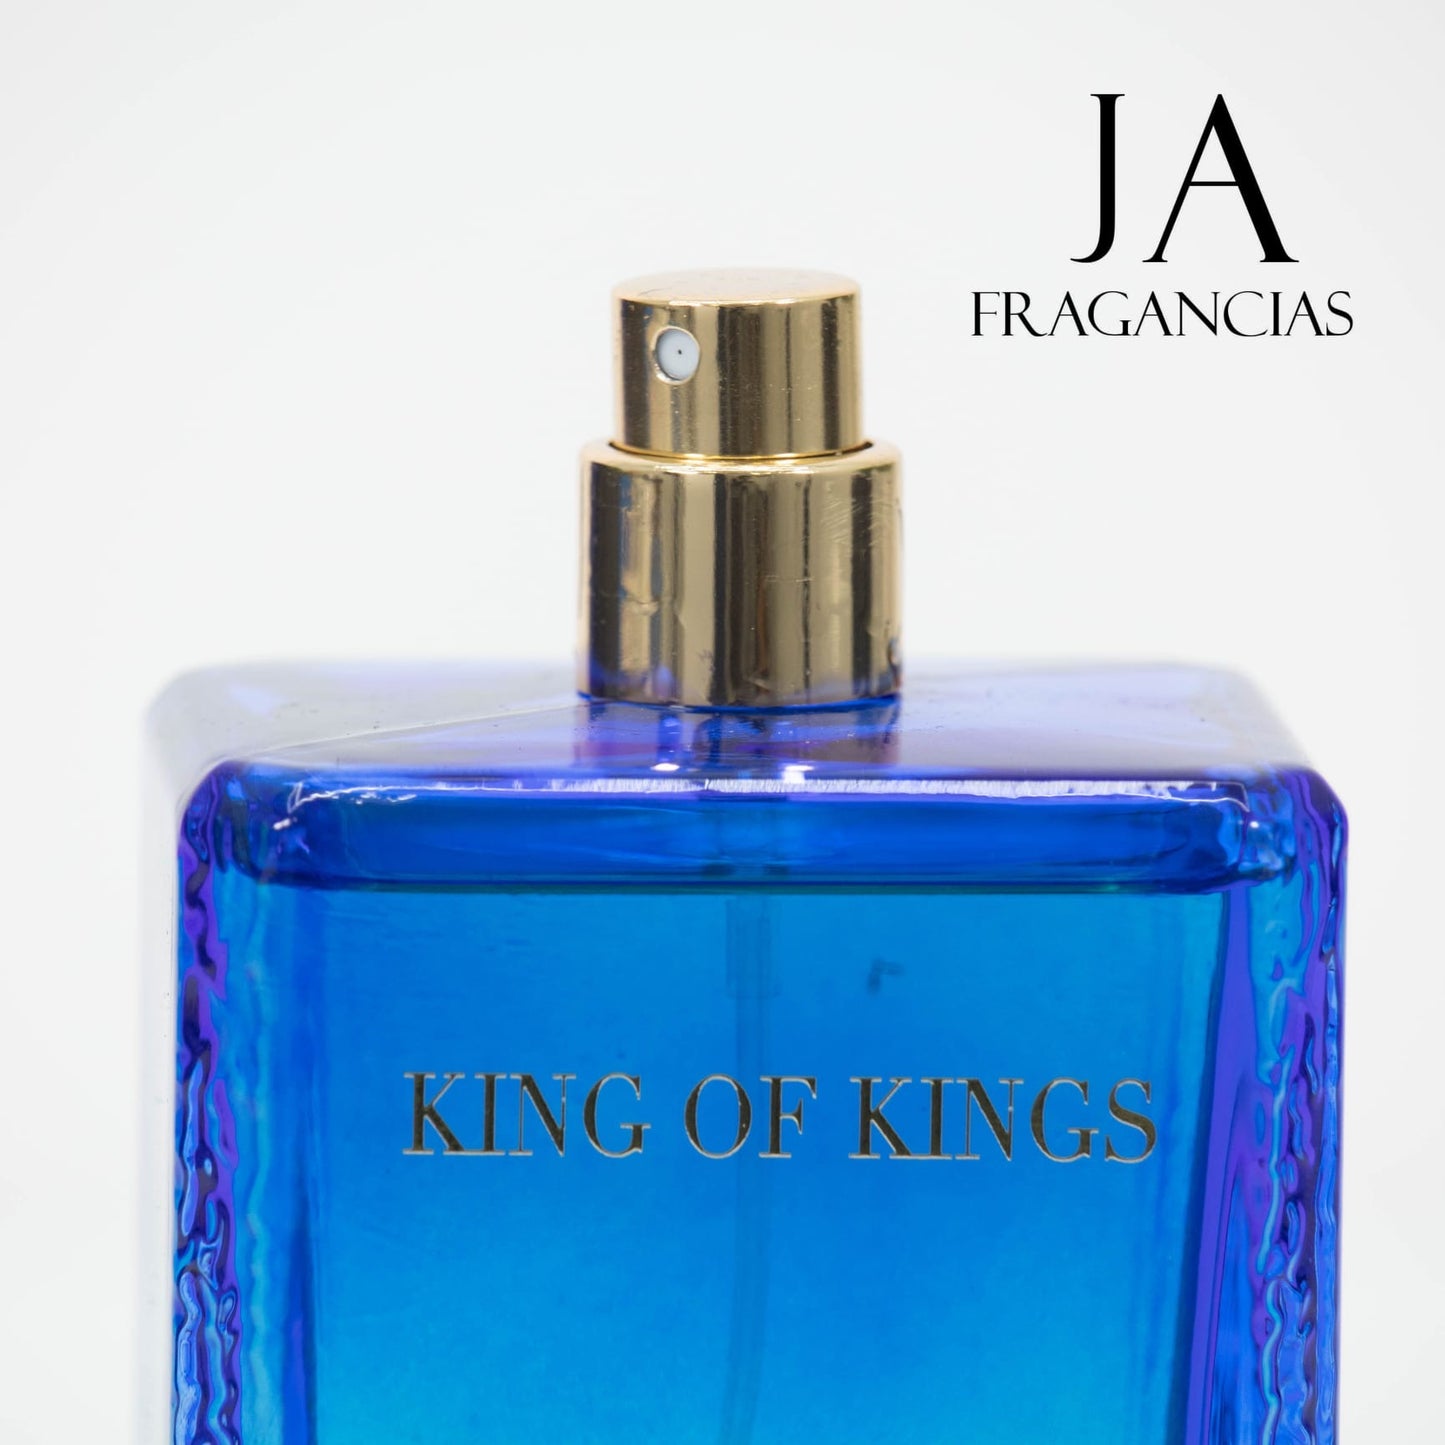 King of Kings Royal Blue para hombre 3.4oz